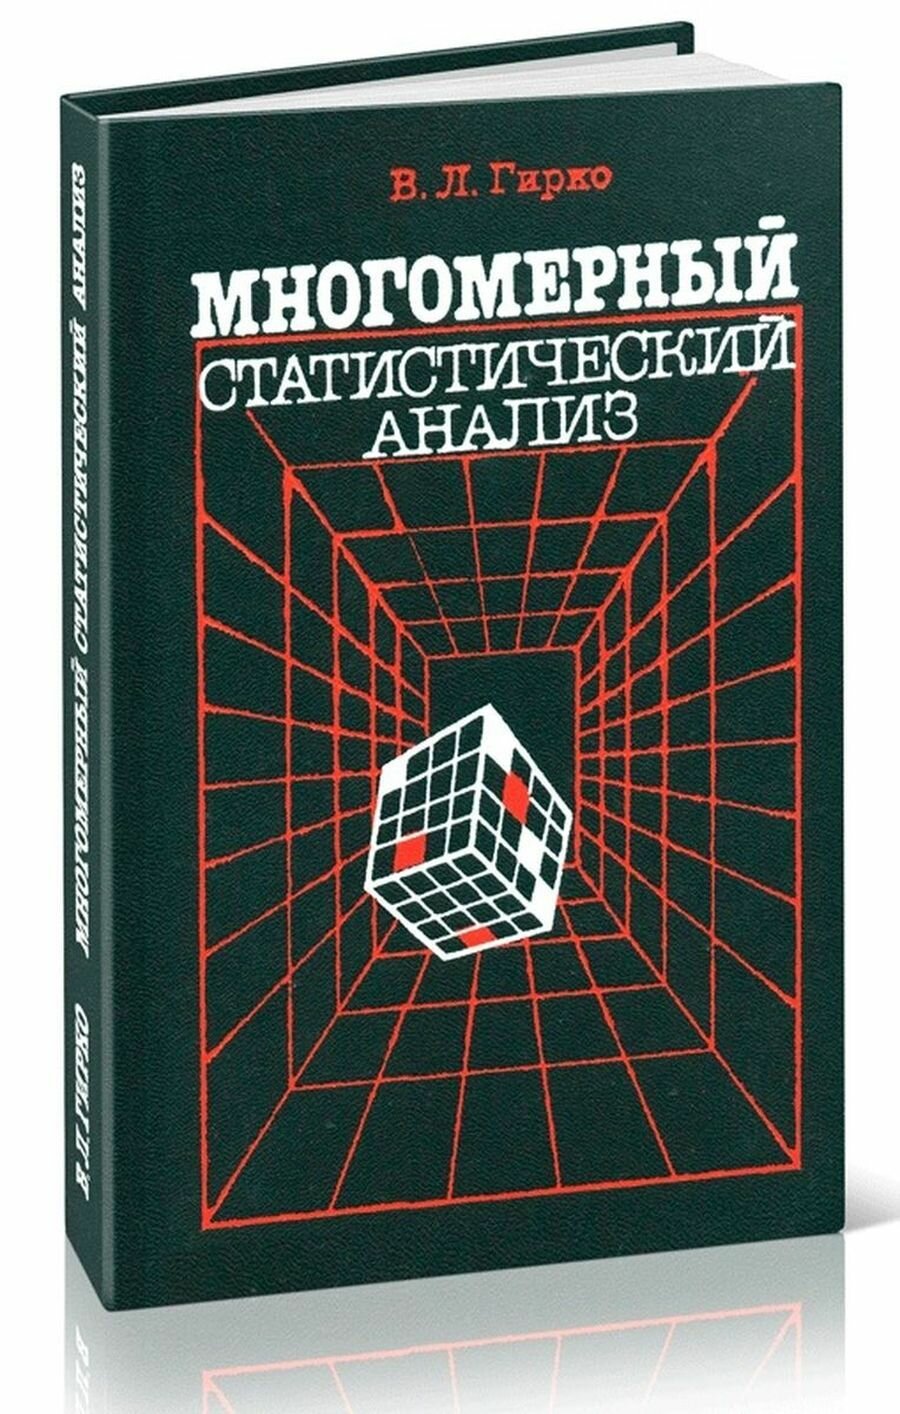 Книга "Многомерный статистический анализ". 1988